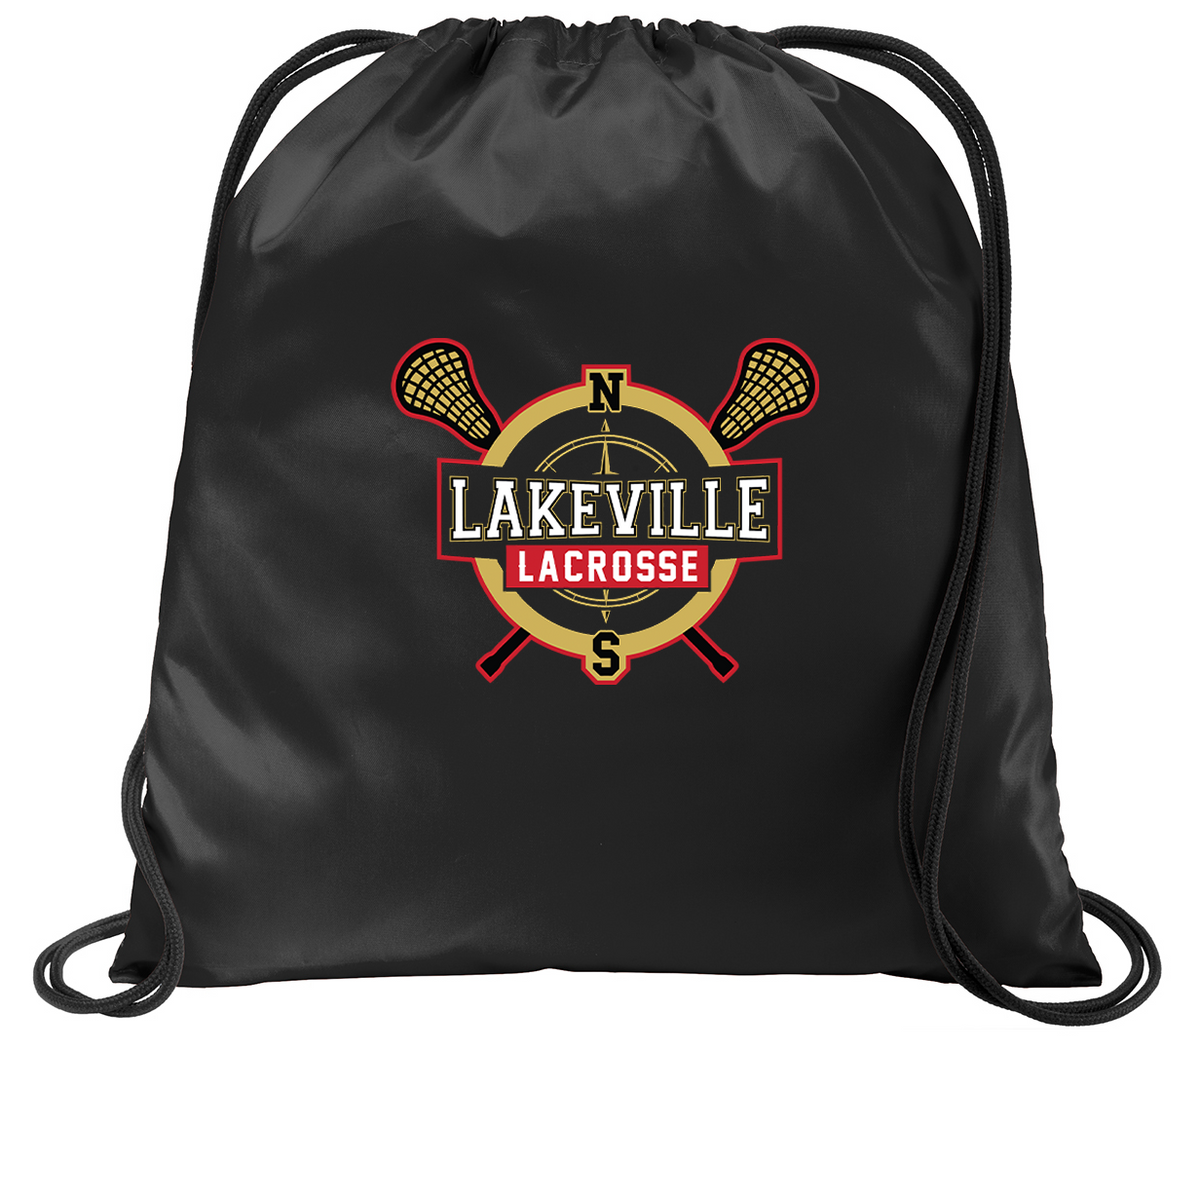 Lakeville Lacrosse Cinch Pack